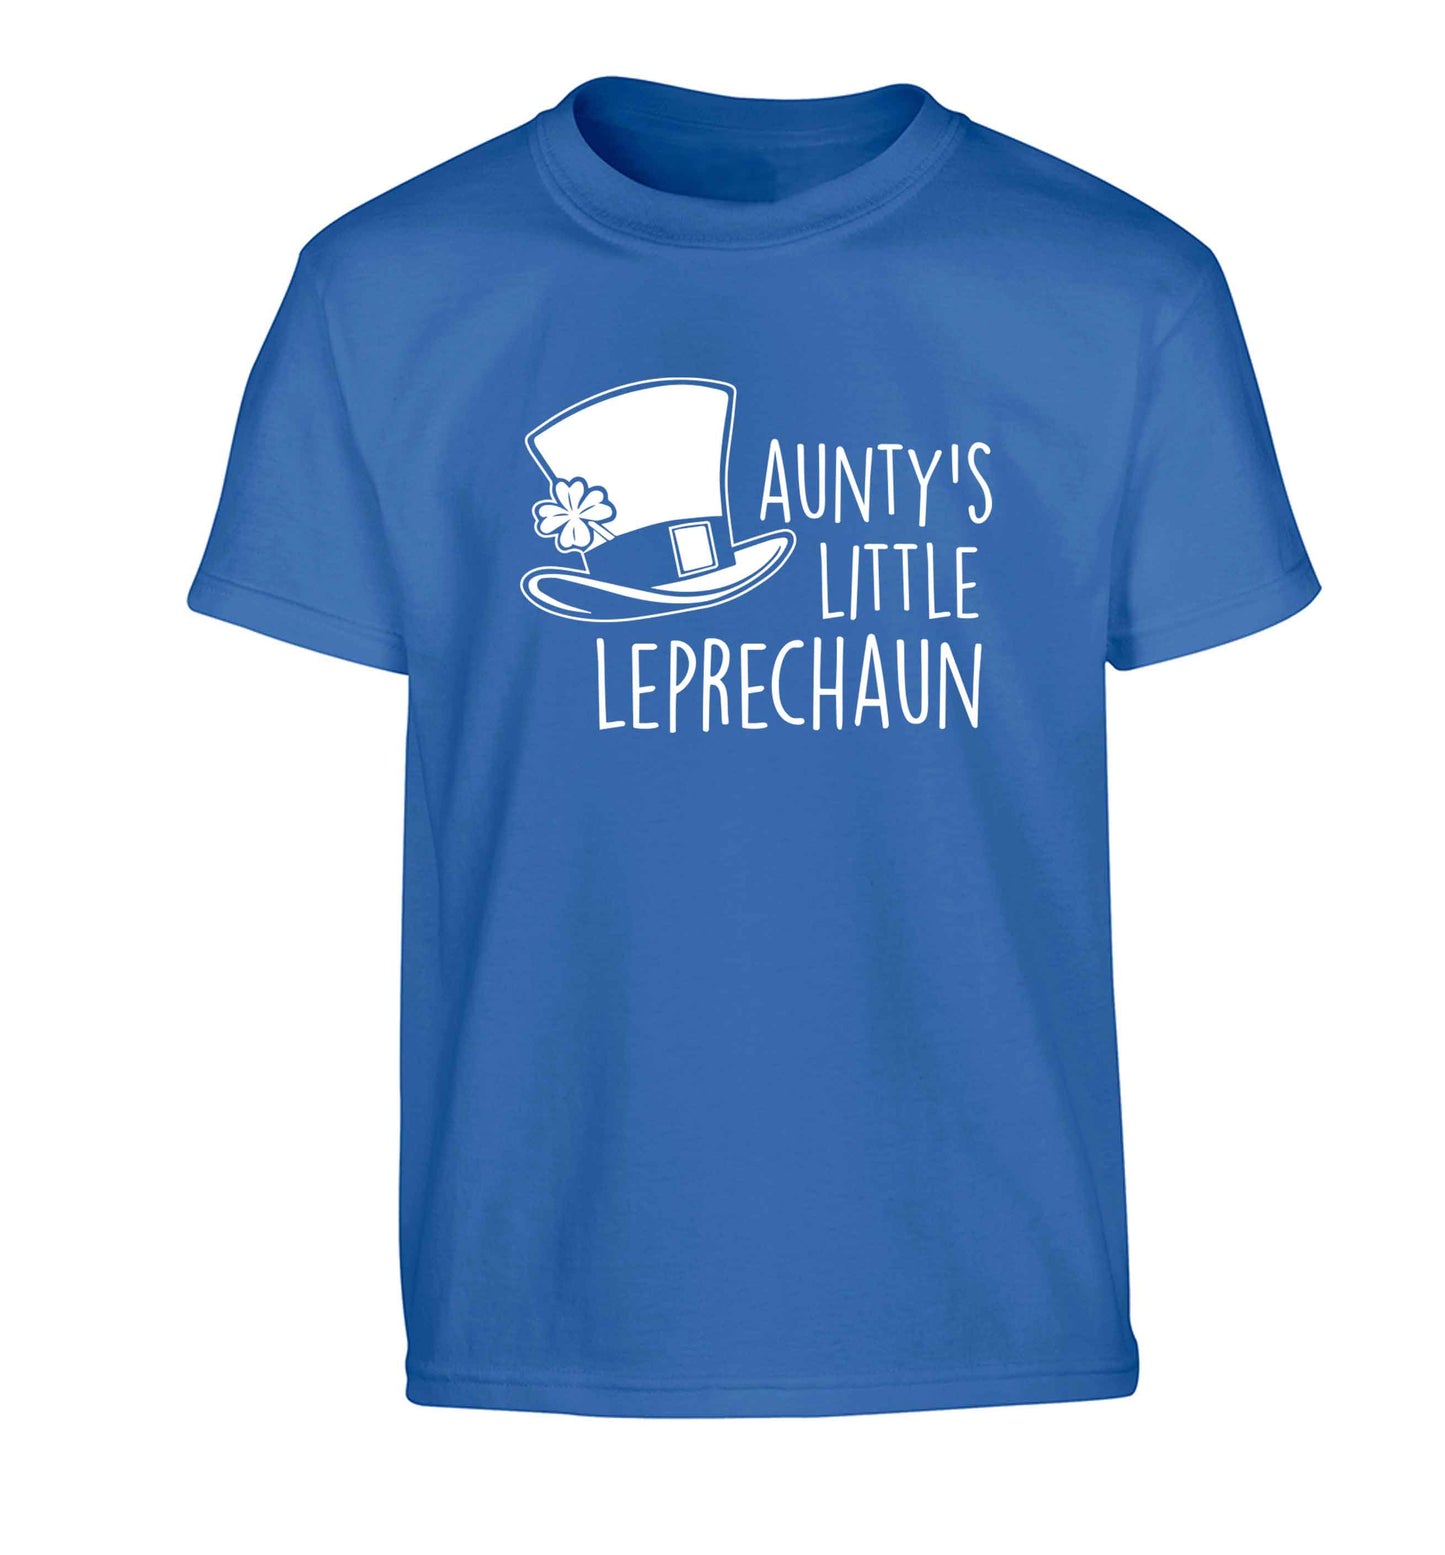 Aunty's little leprechaun Children's blue Tshirt 12-13 Years